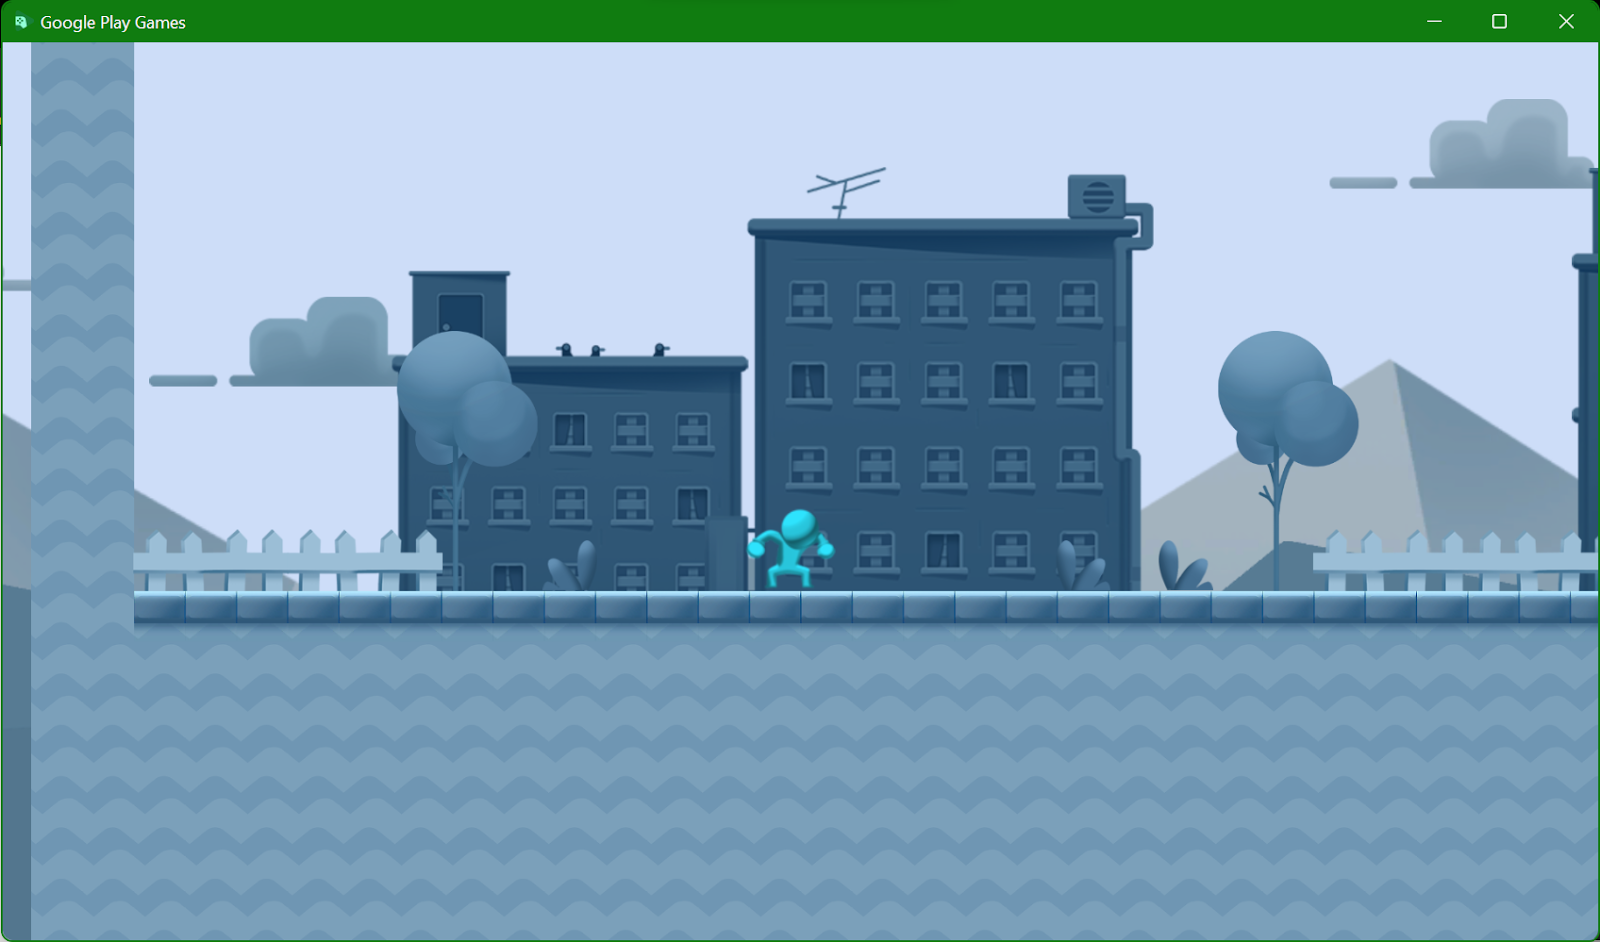 Captura de tela do emulador do Google Play Games com o "2D Platformer Microgame" em execução